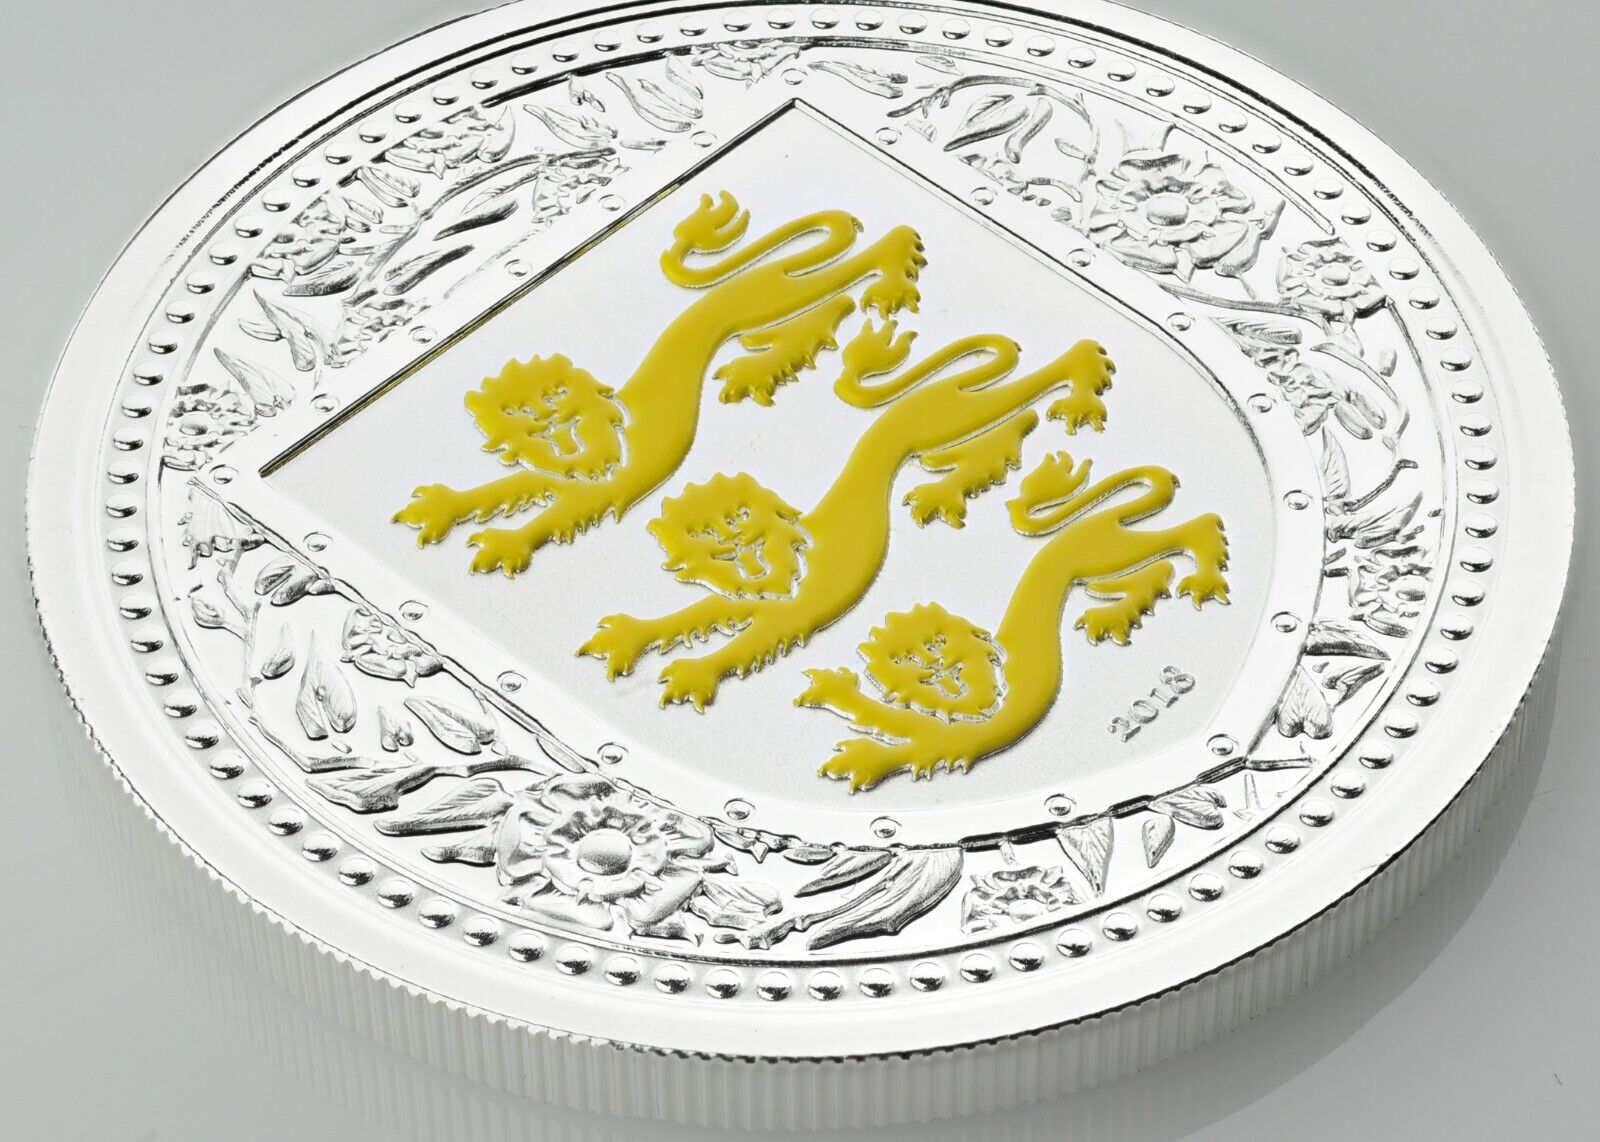 1 Oz Silver Coin 2018 Gibraltar £2 Royal Arms of England Color Proof - Yellow-classypw.com-1